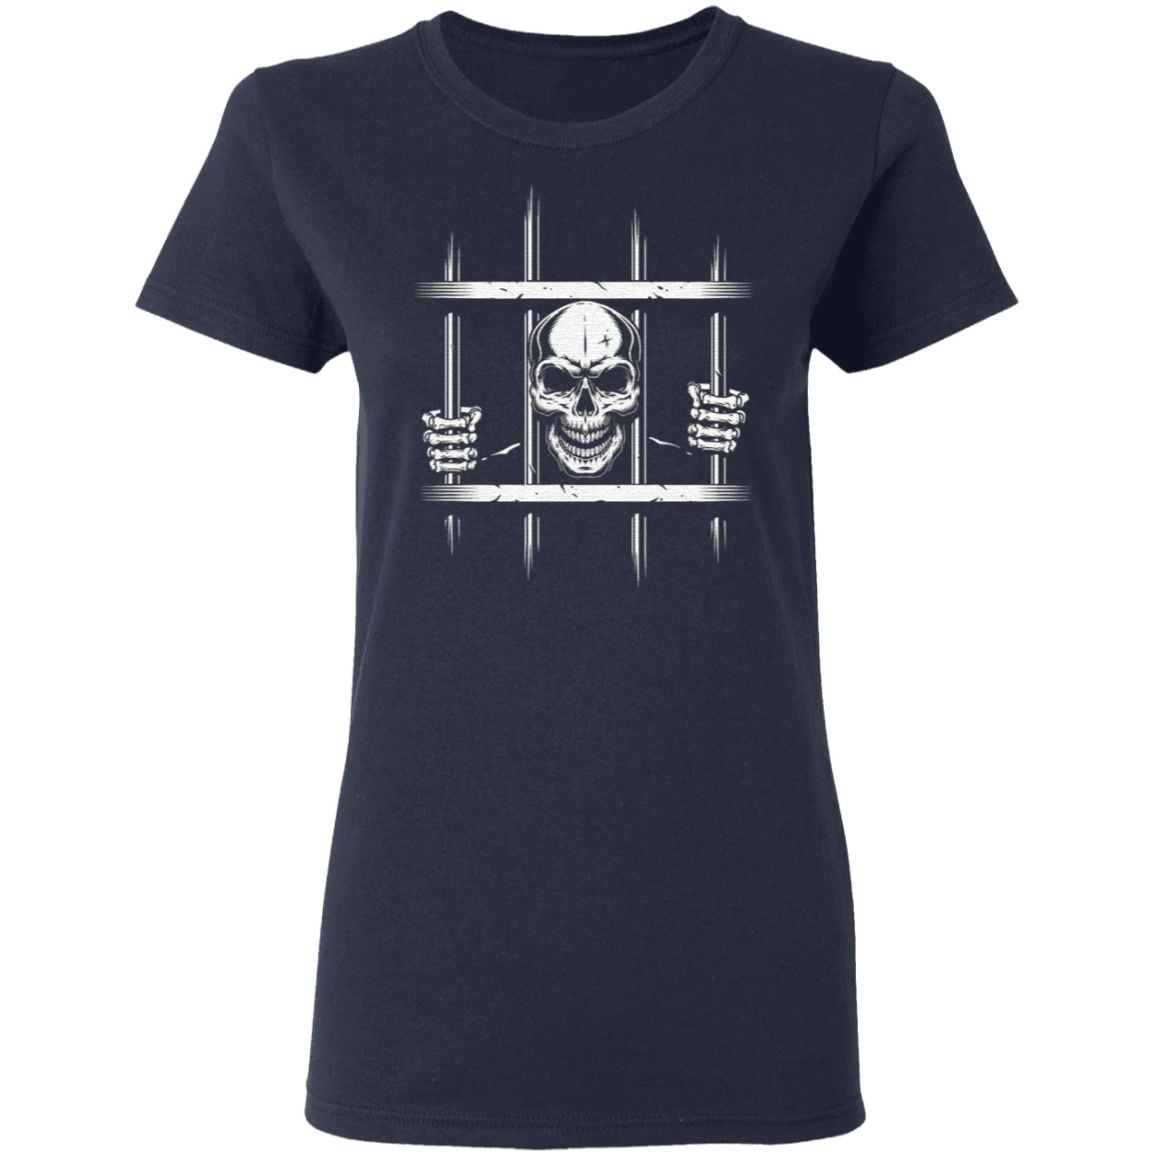 Skull lovers cool T-shirt